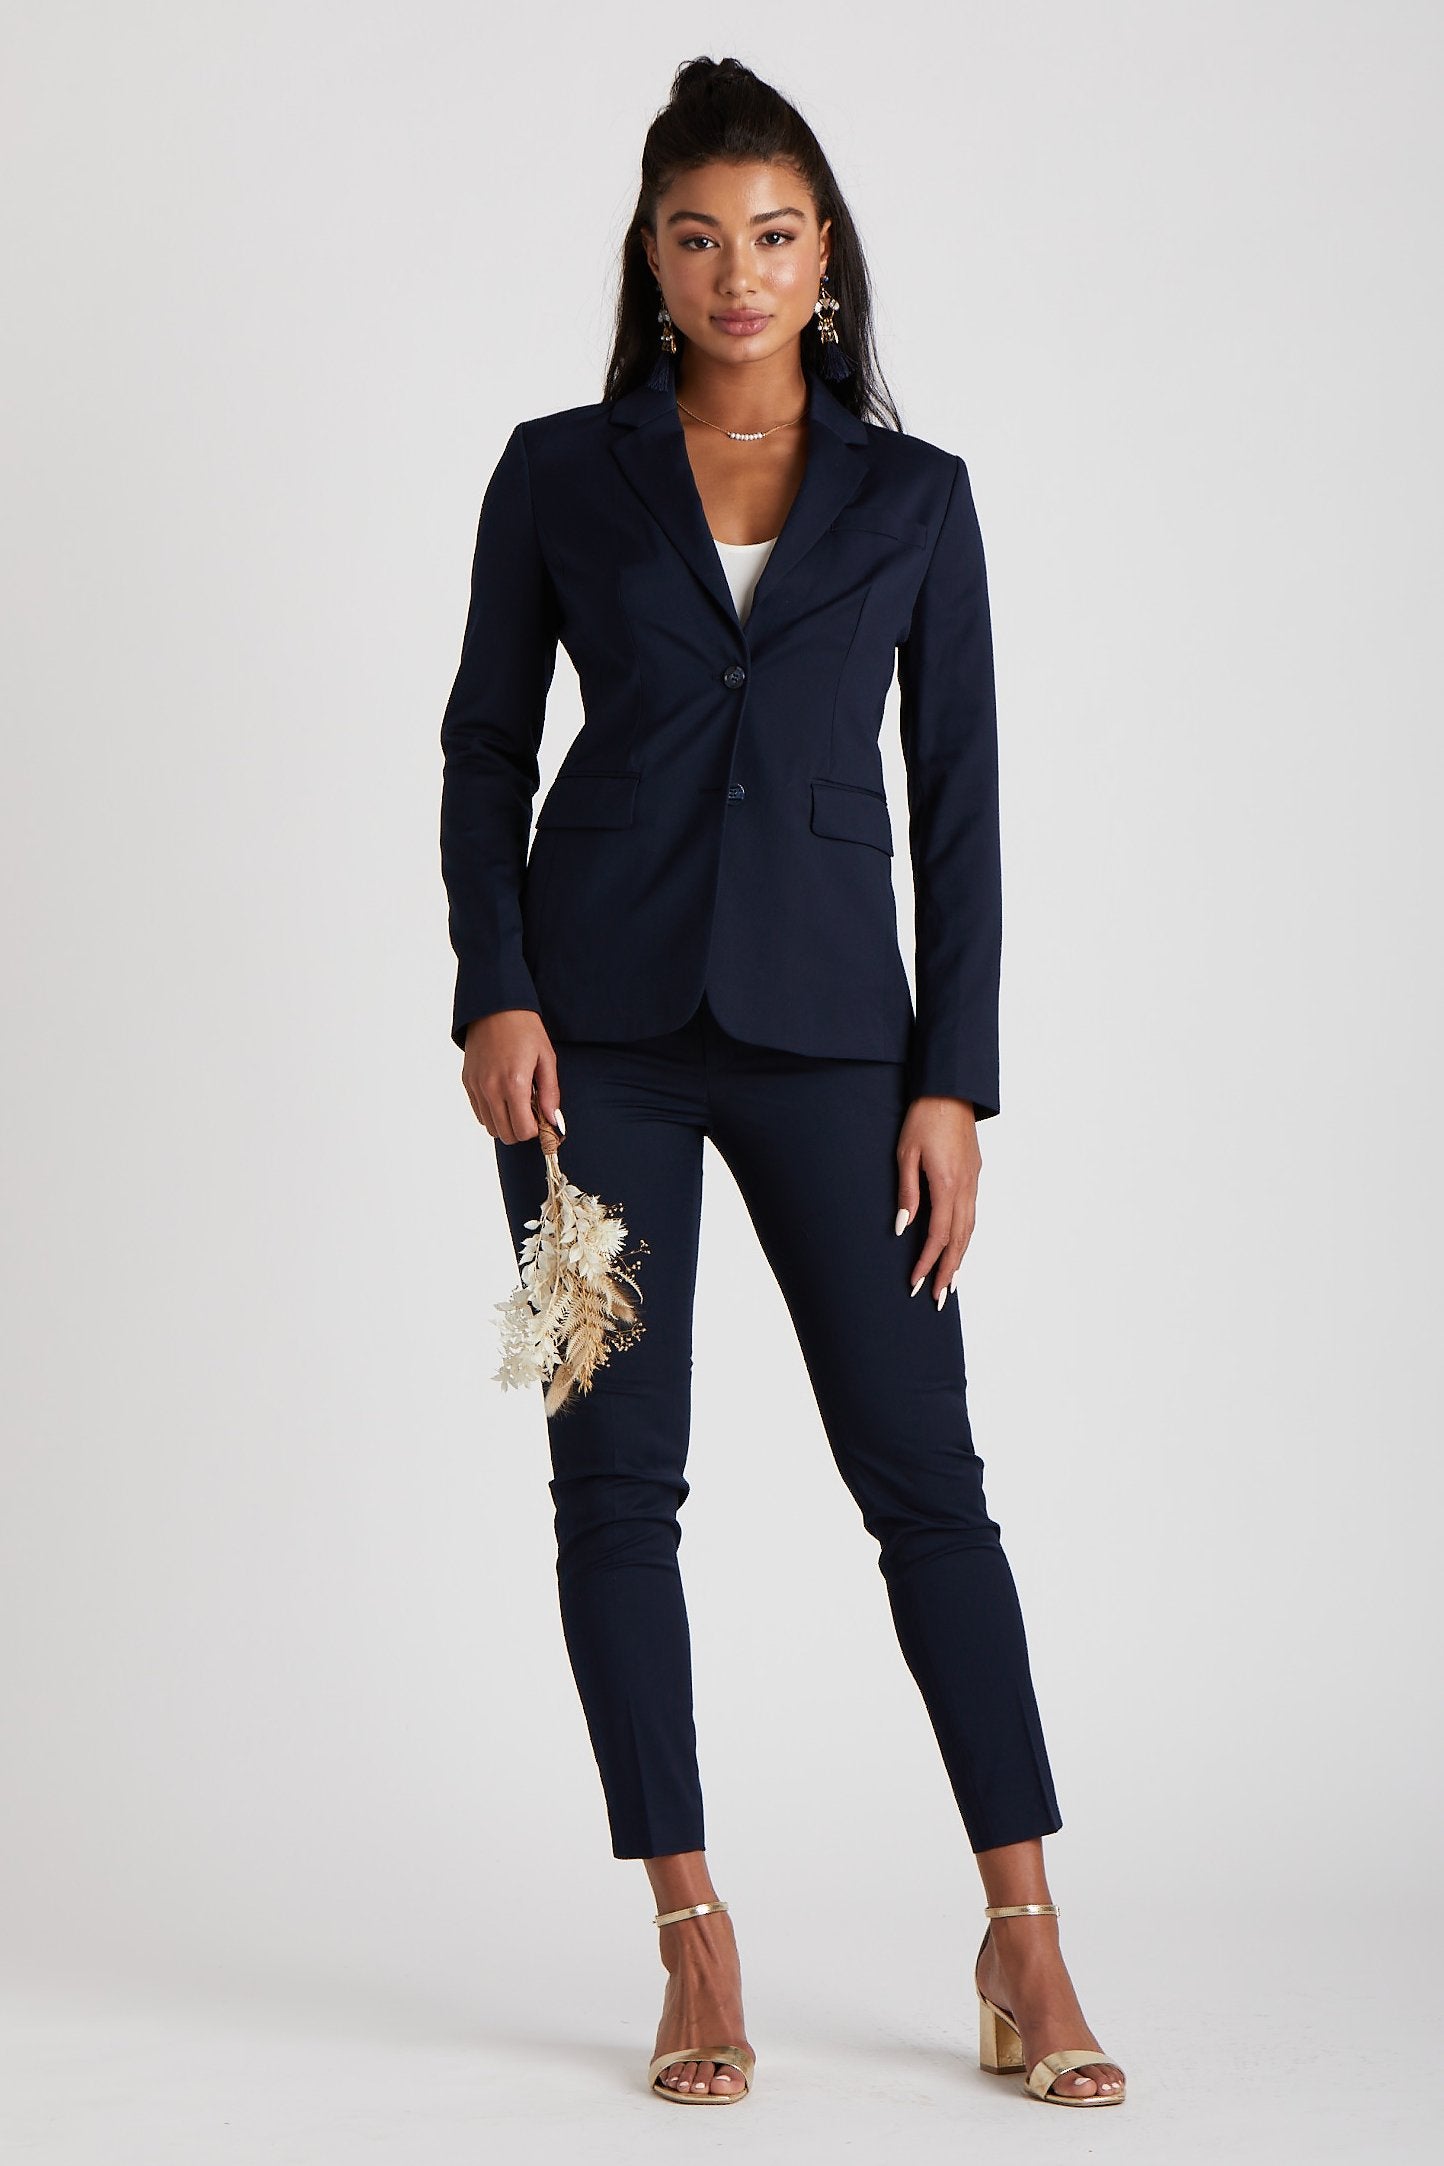 Women's Navy Blue Suit Jacket by SuitShop